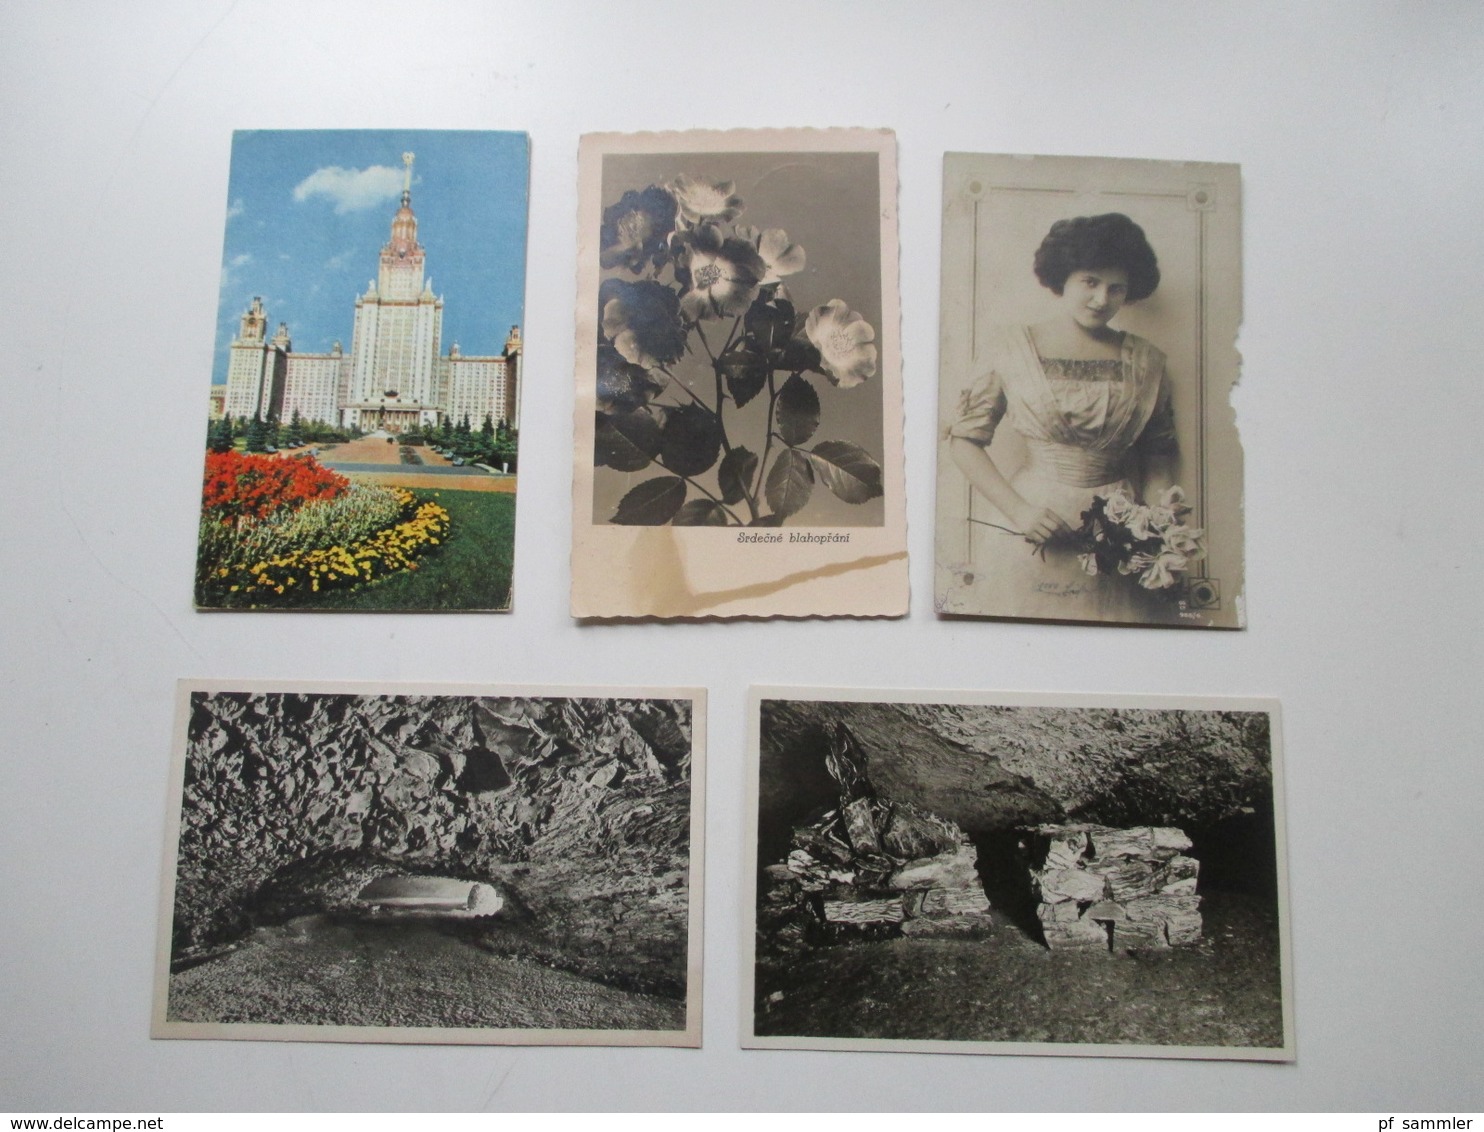 AK Deutschland / etwas Europa ca. 1909 - 50er Jahre insgesamt 135 Karten / ein paar Fotos. Stöberposten!!